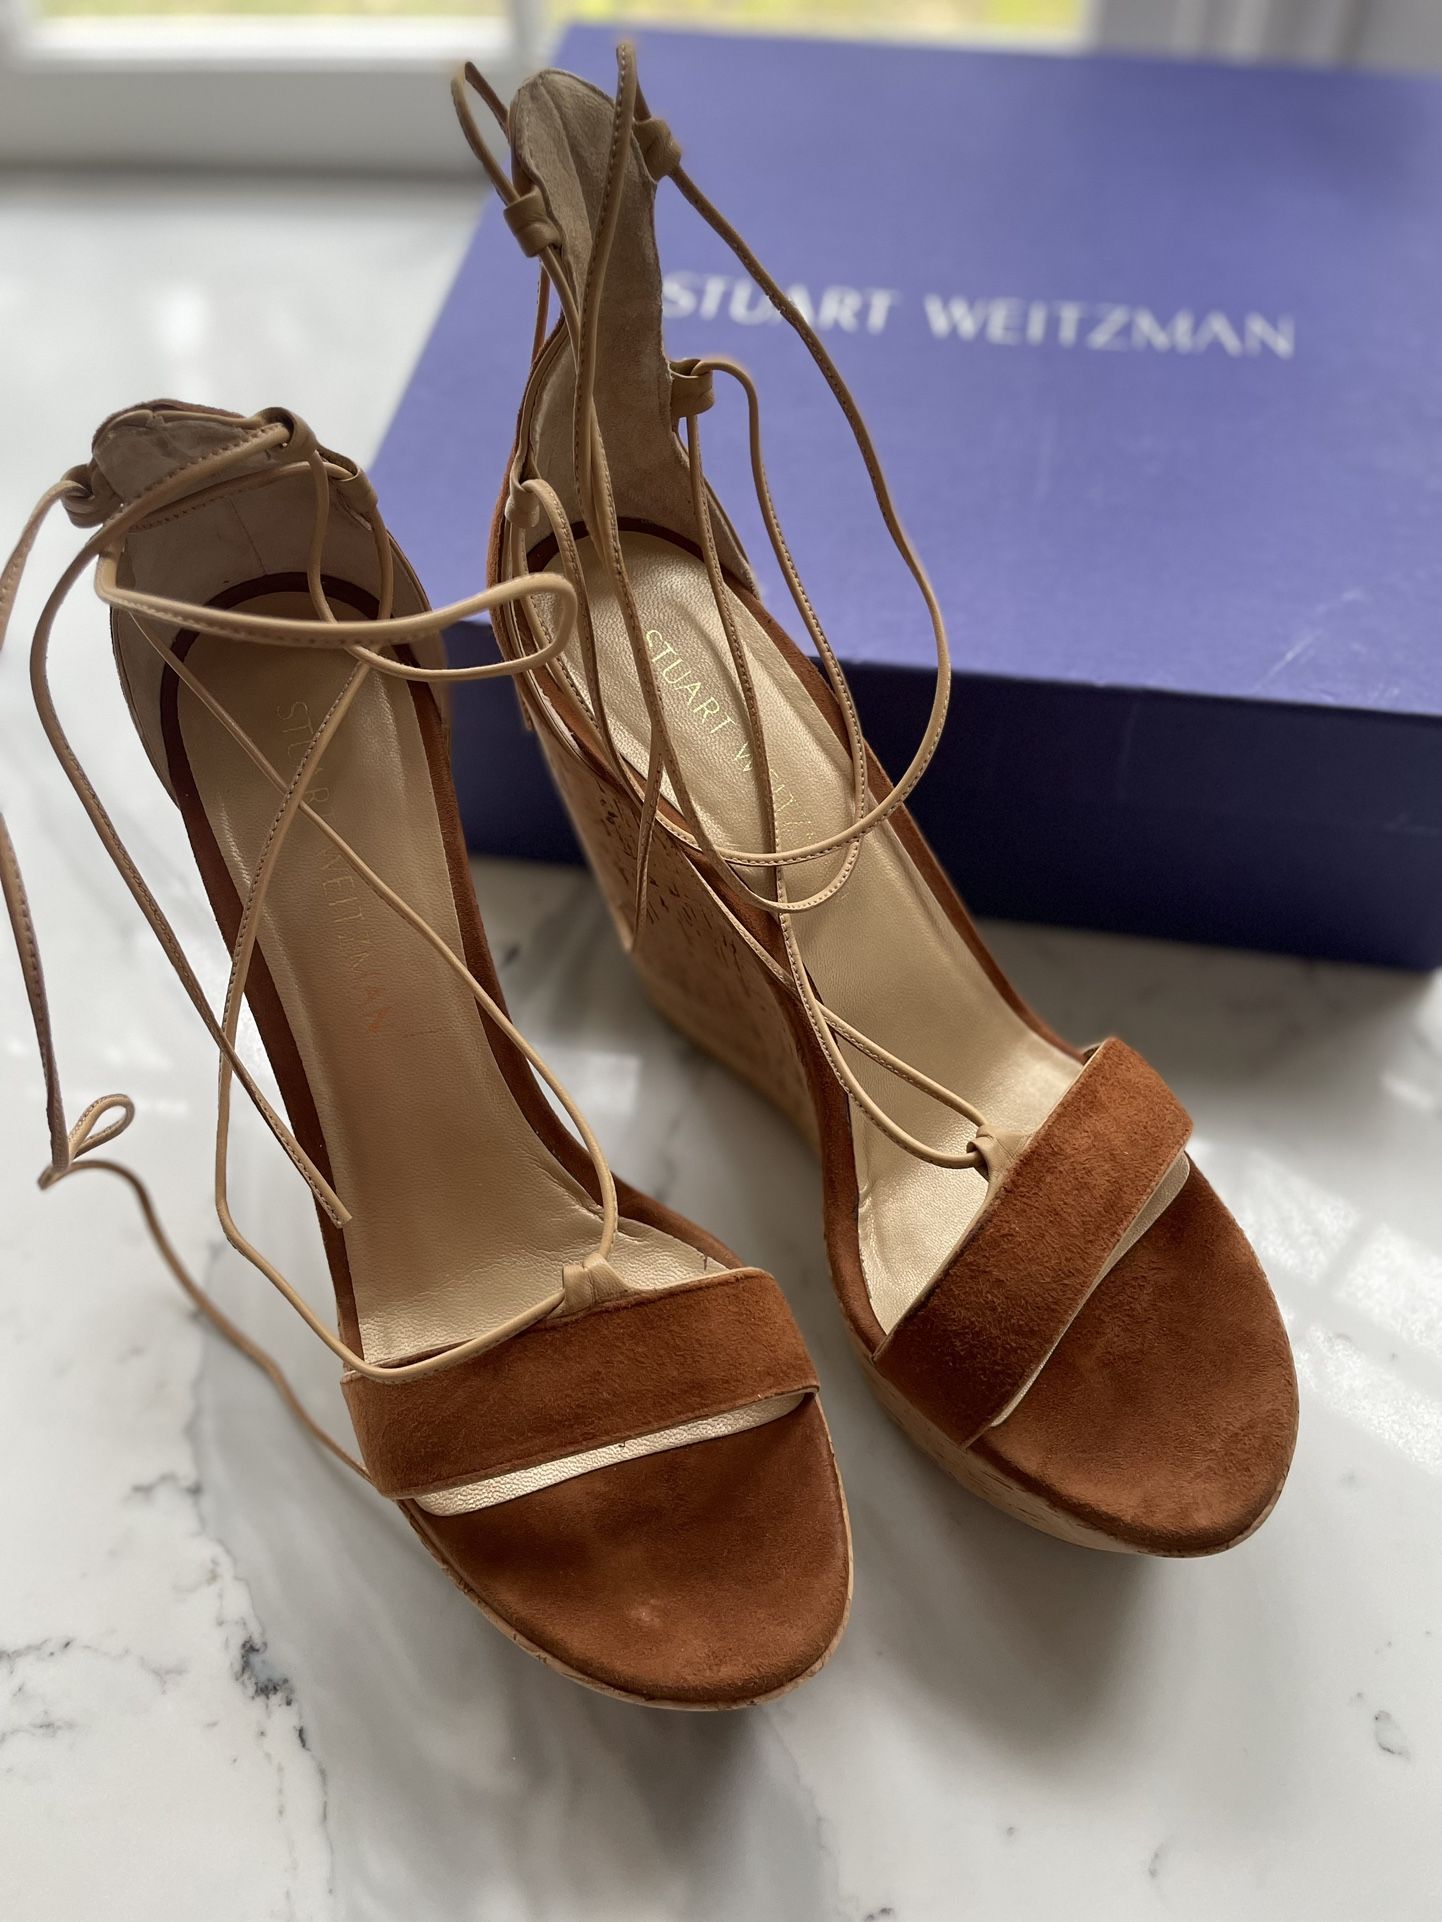 Stuart Weitzman Wedge Lace Up Heeled Sandals 